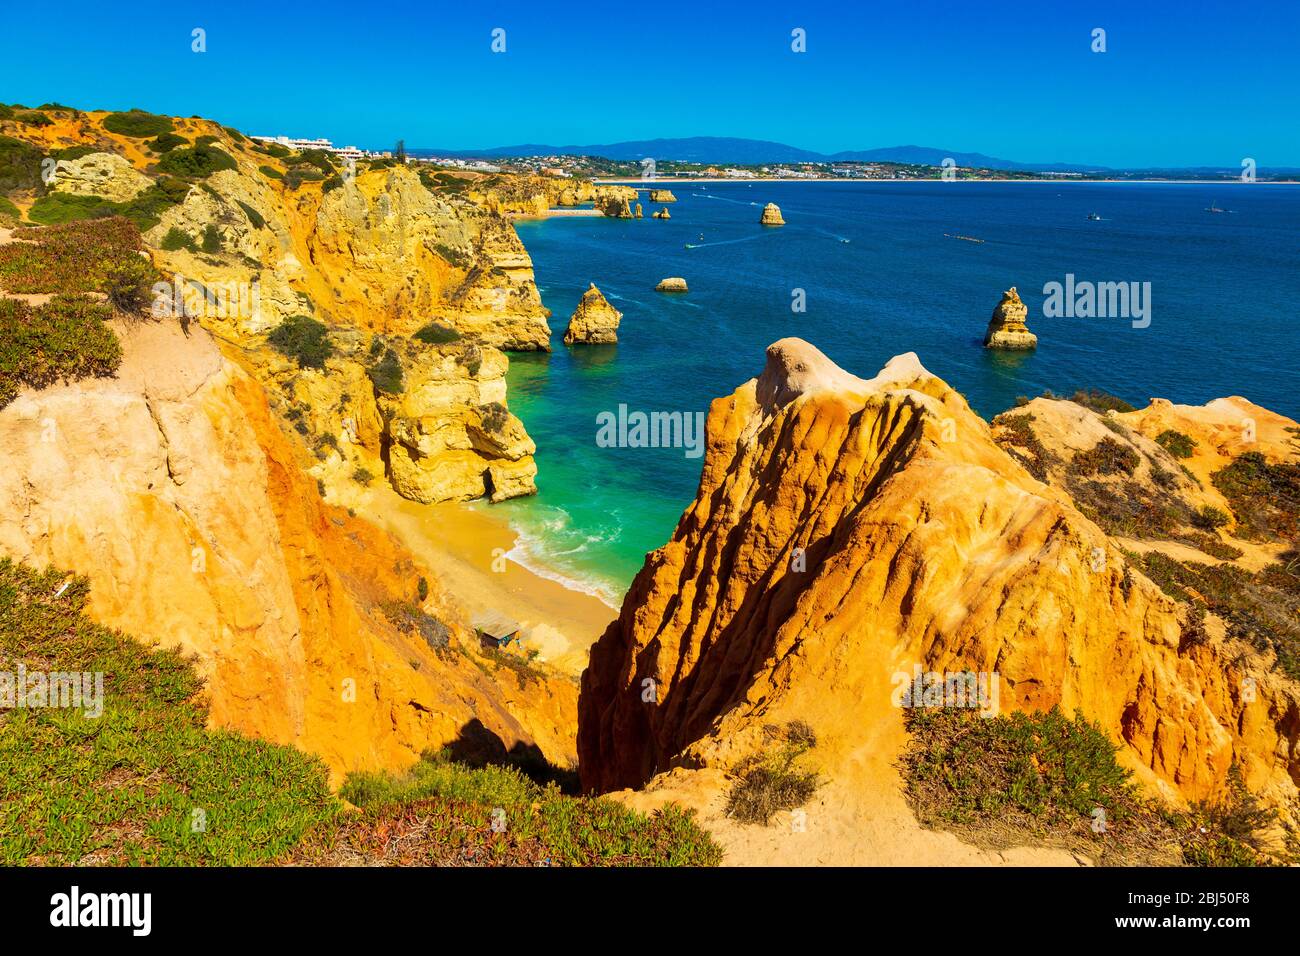 Algarve, Portogallo: Meravigliosa laguna blu oceano e spiaggia sabbiosa tra le scogliere gialle. Place si trova vicino all'Oceano Atlantico vicino alla città di Lagos in Europa. Foto Stock